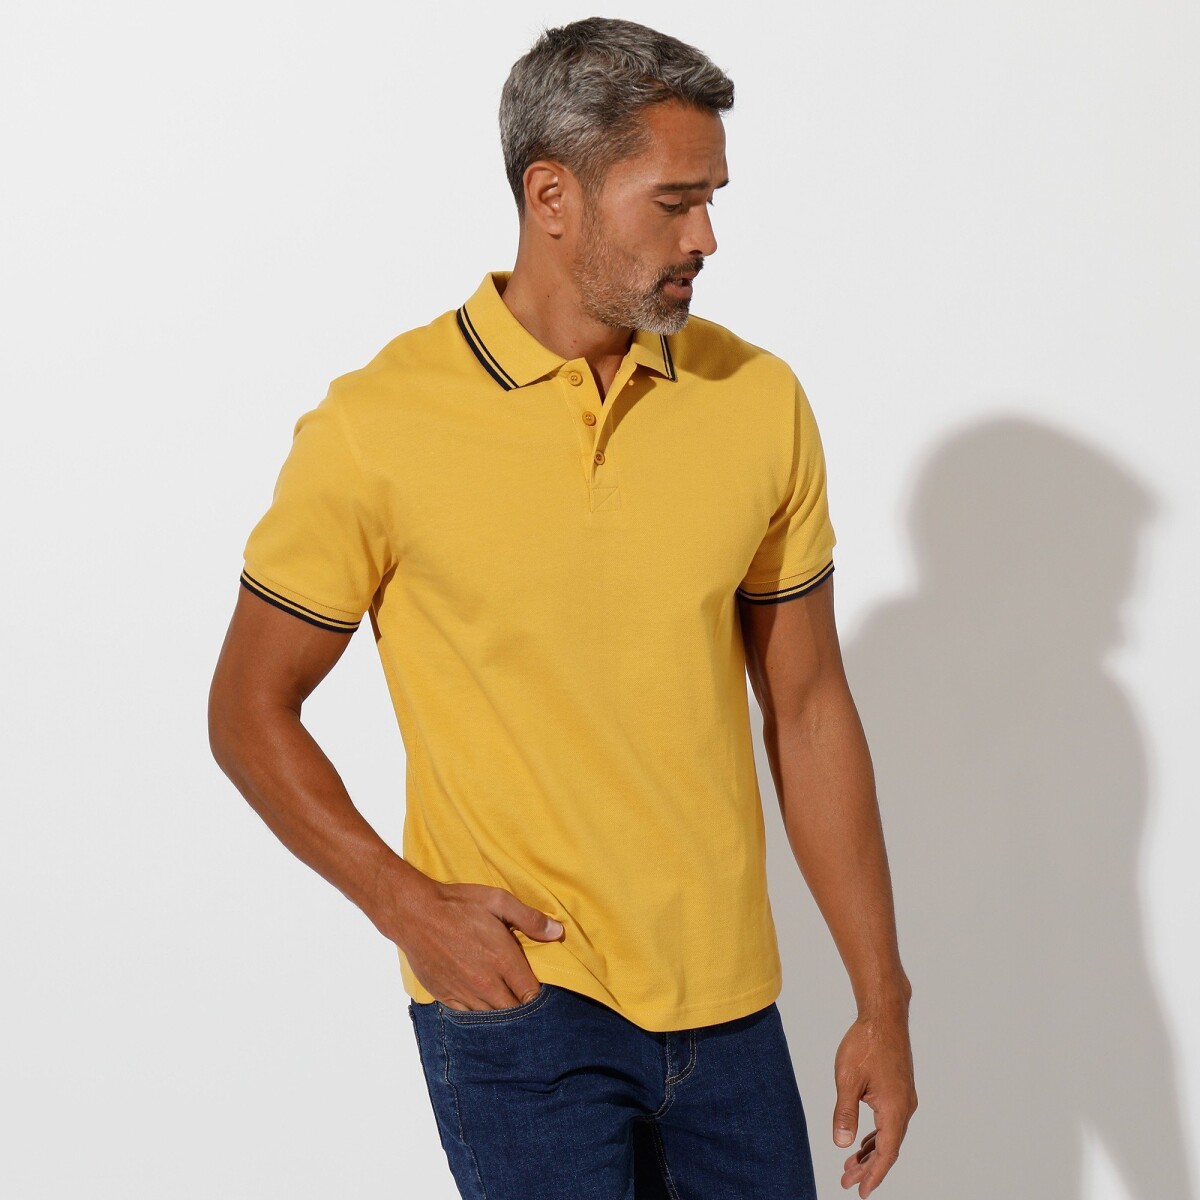 Blancheporte Polo tričko s pruhovaným límečkem z piké úpletu, s krátkými rukávy žlutá 8796 (M)